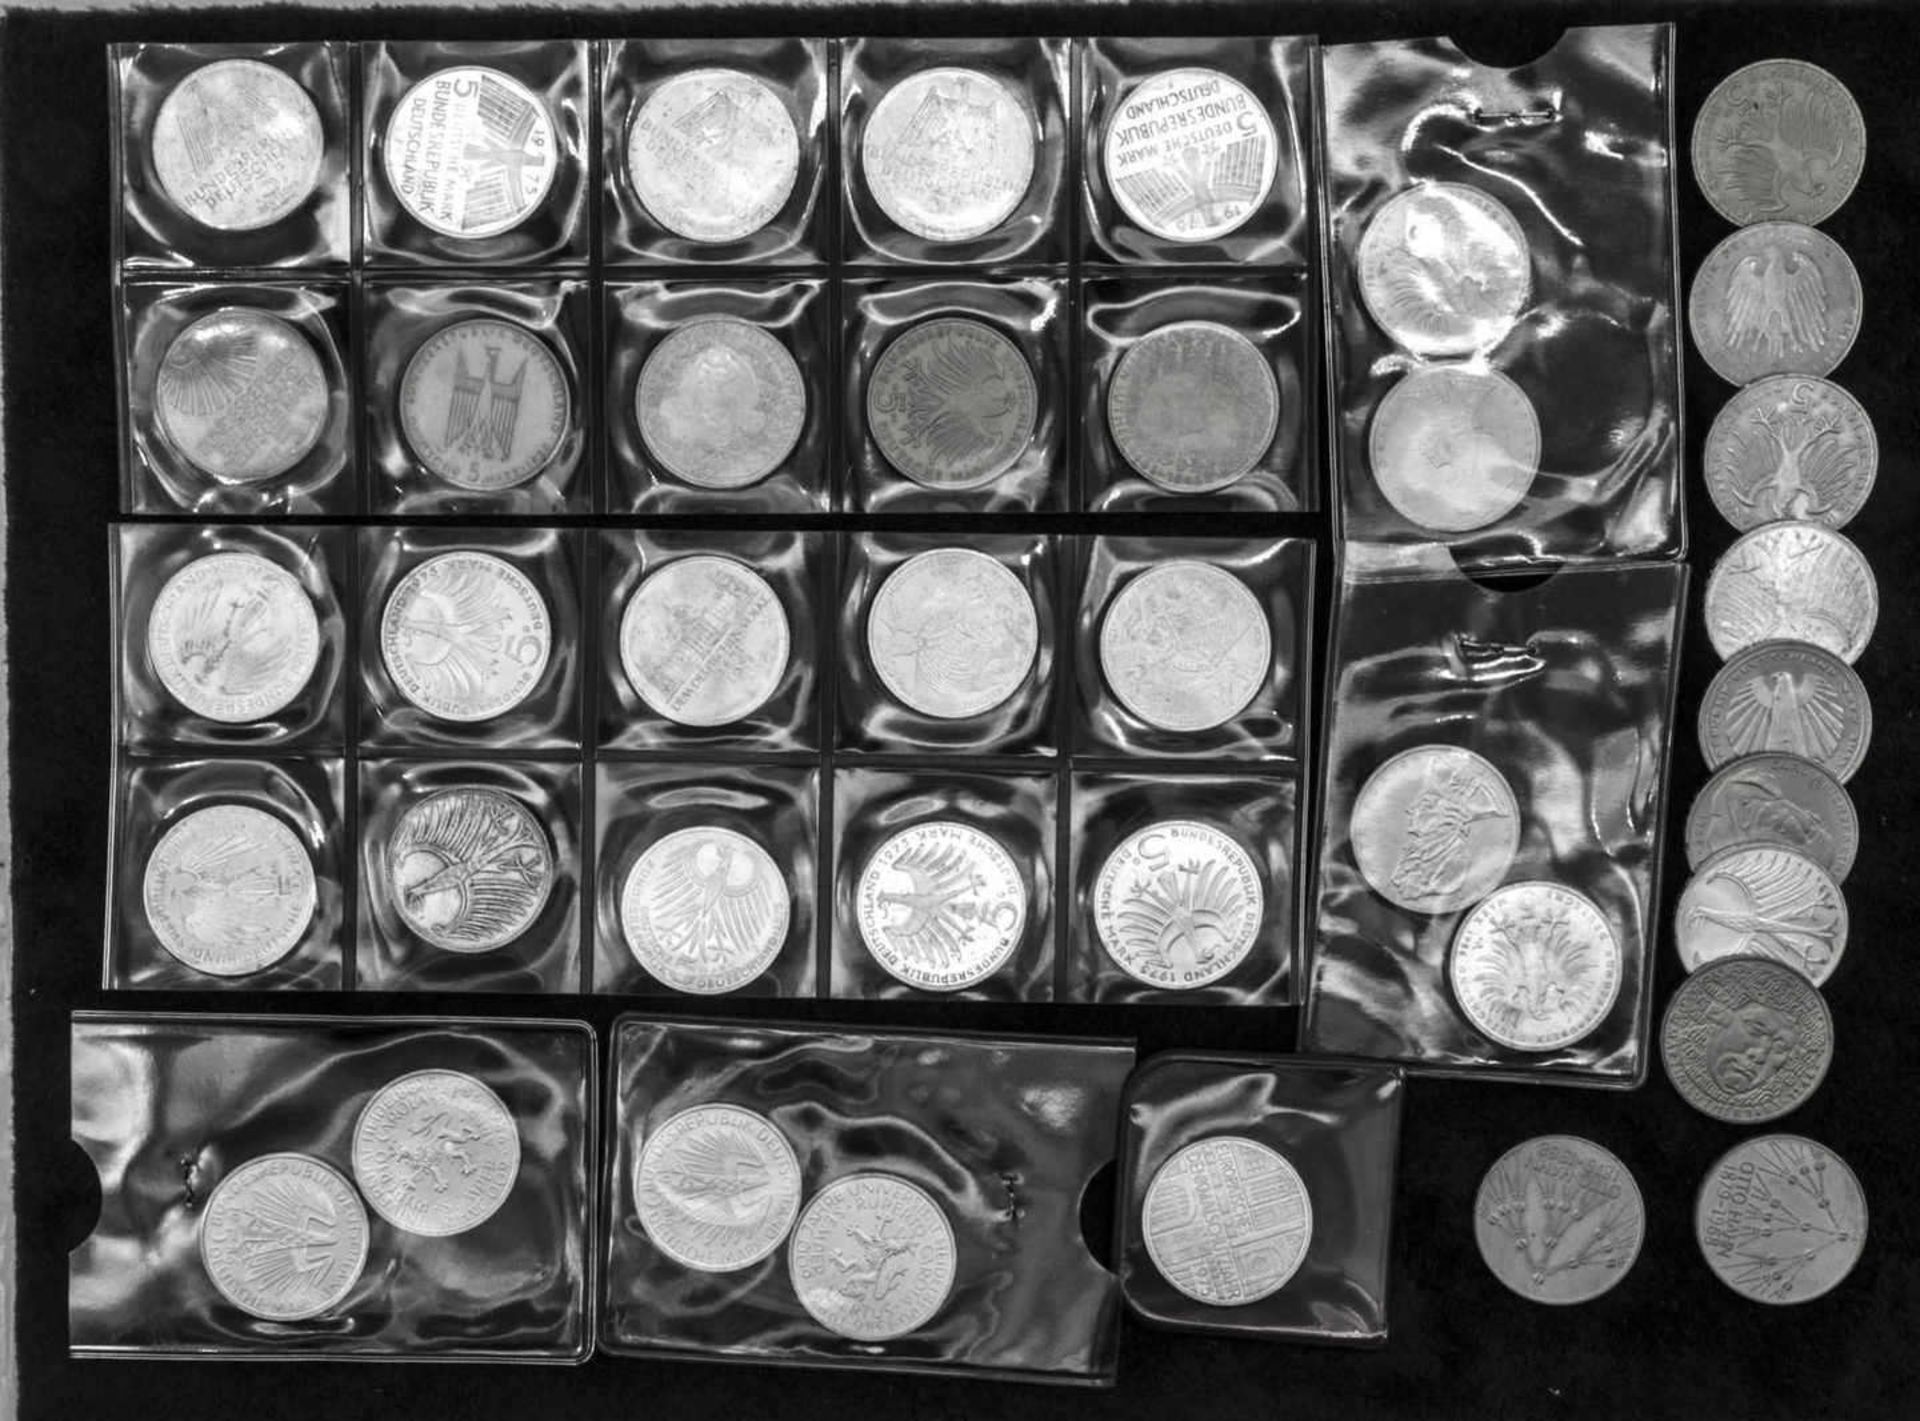 BRD, Lot 5.- DM - Münzen, dabei Gedenkmünzen und Silberadler. Insgesamt 39 Stück.